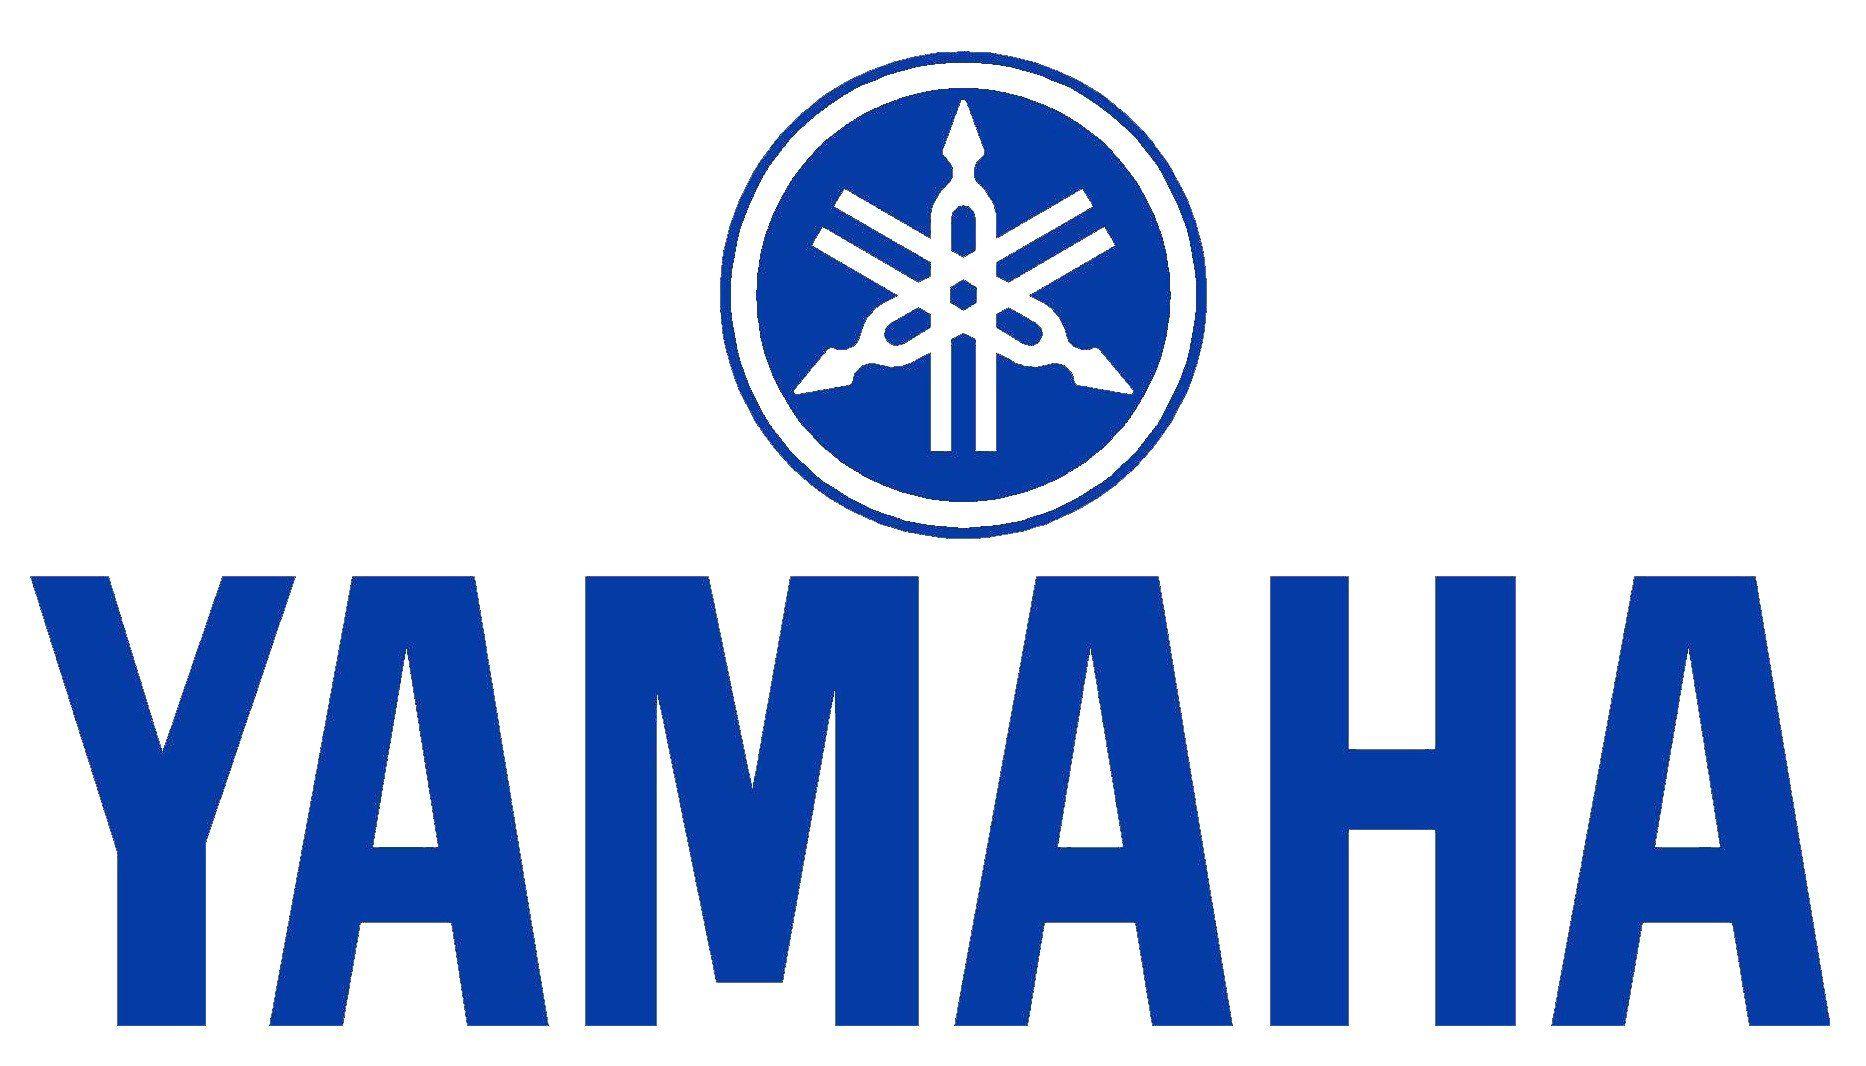 Yamaha Logo - Yamaha Logo Decal / Sticker | Tacticalmindz.com